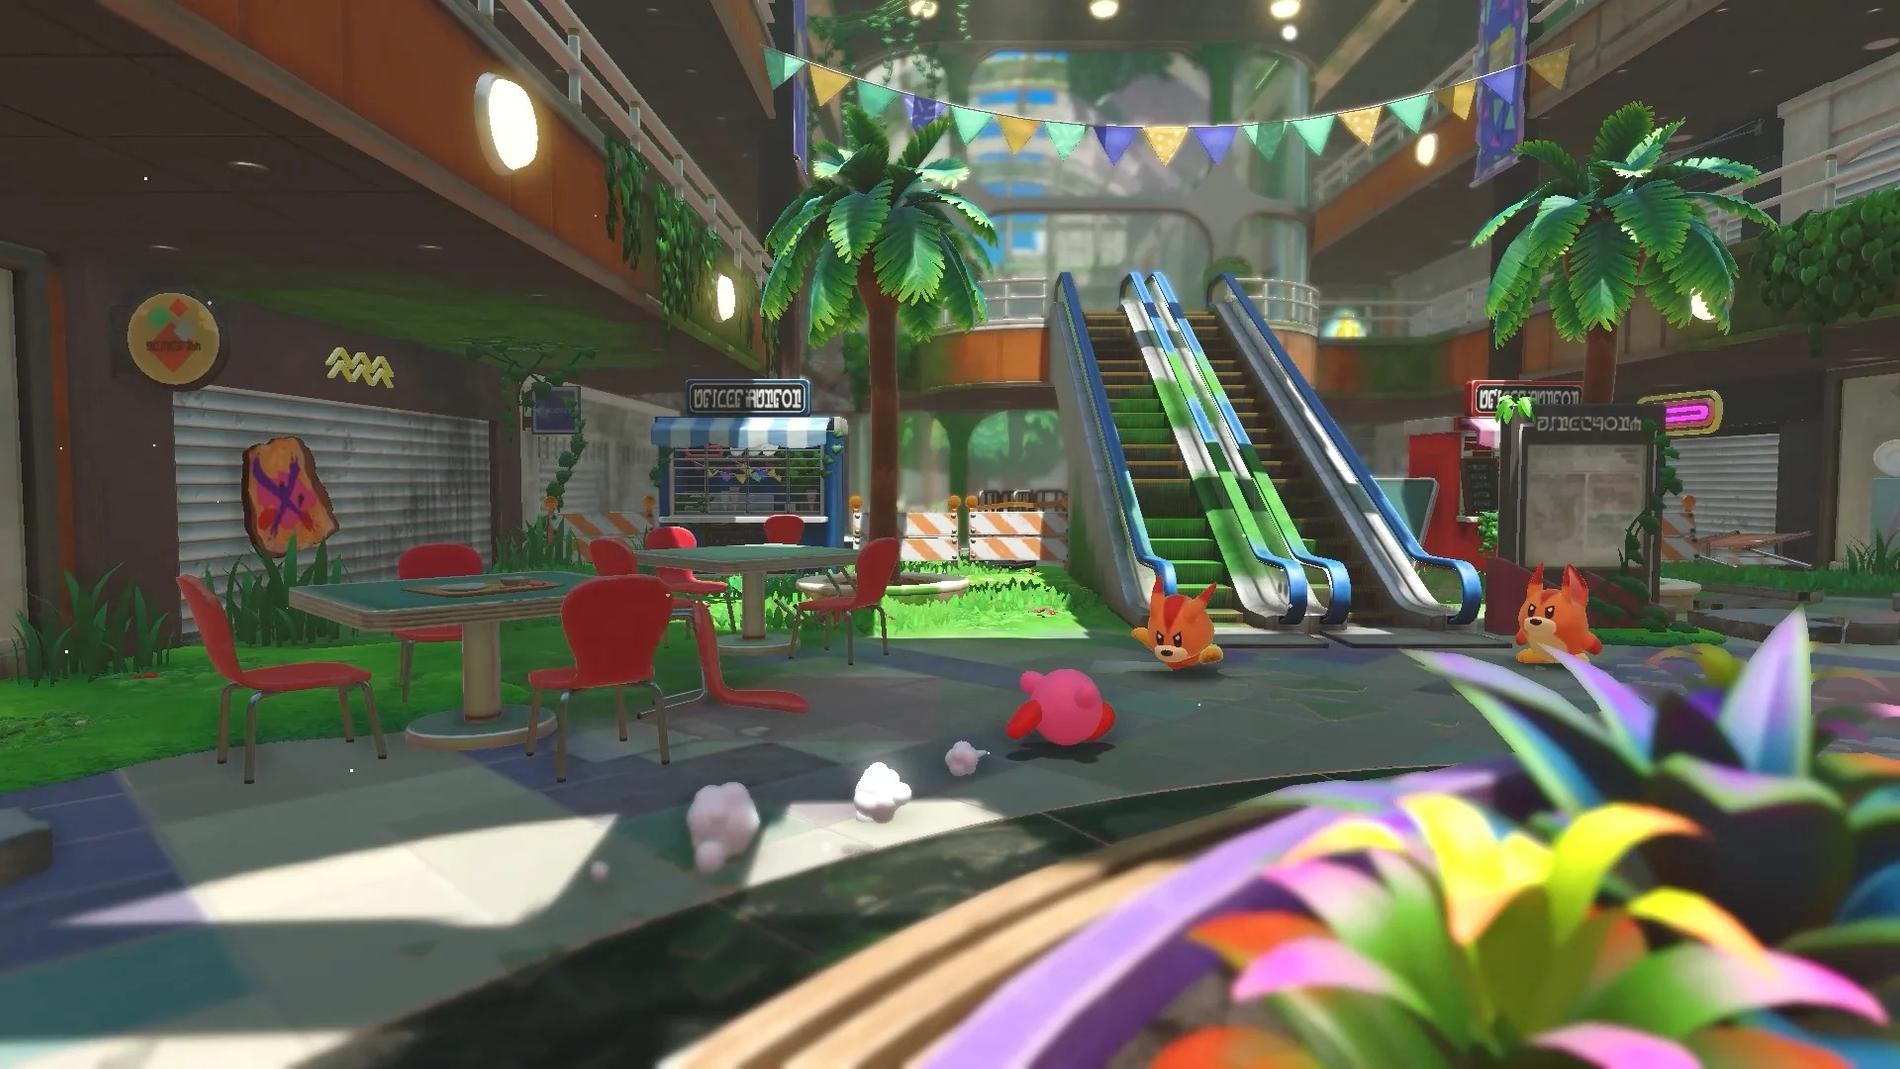 För att åter bringa balans till världen måste Kirby ta sig igenom olika miljöer som nöjesparker och shoppingcentrum.